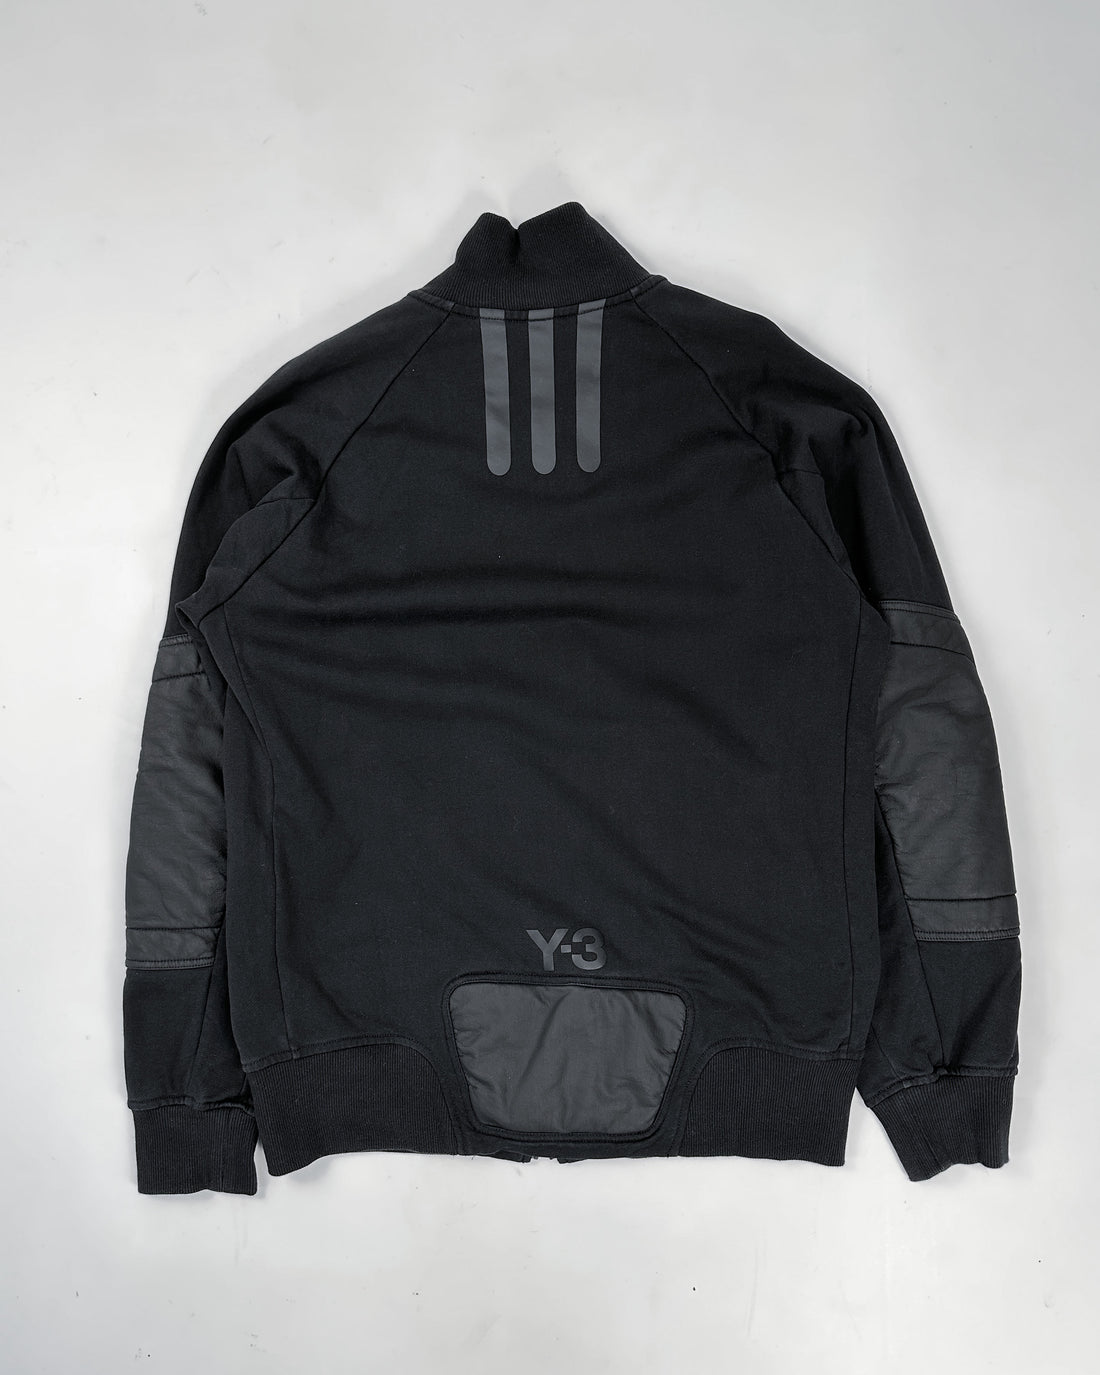 Adidas X Yohji Yamamoto (Y-3) 2-Texture Zip Up 2017